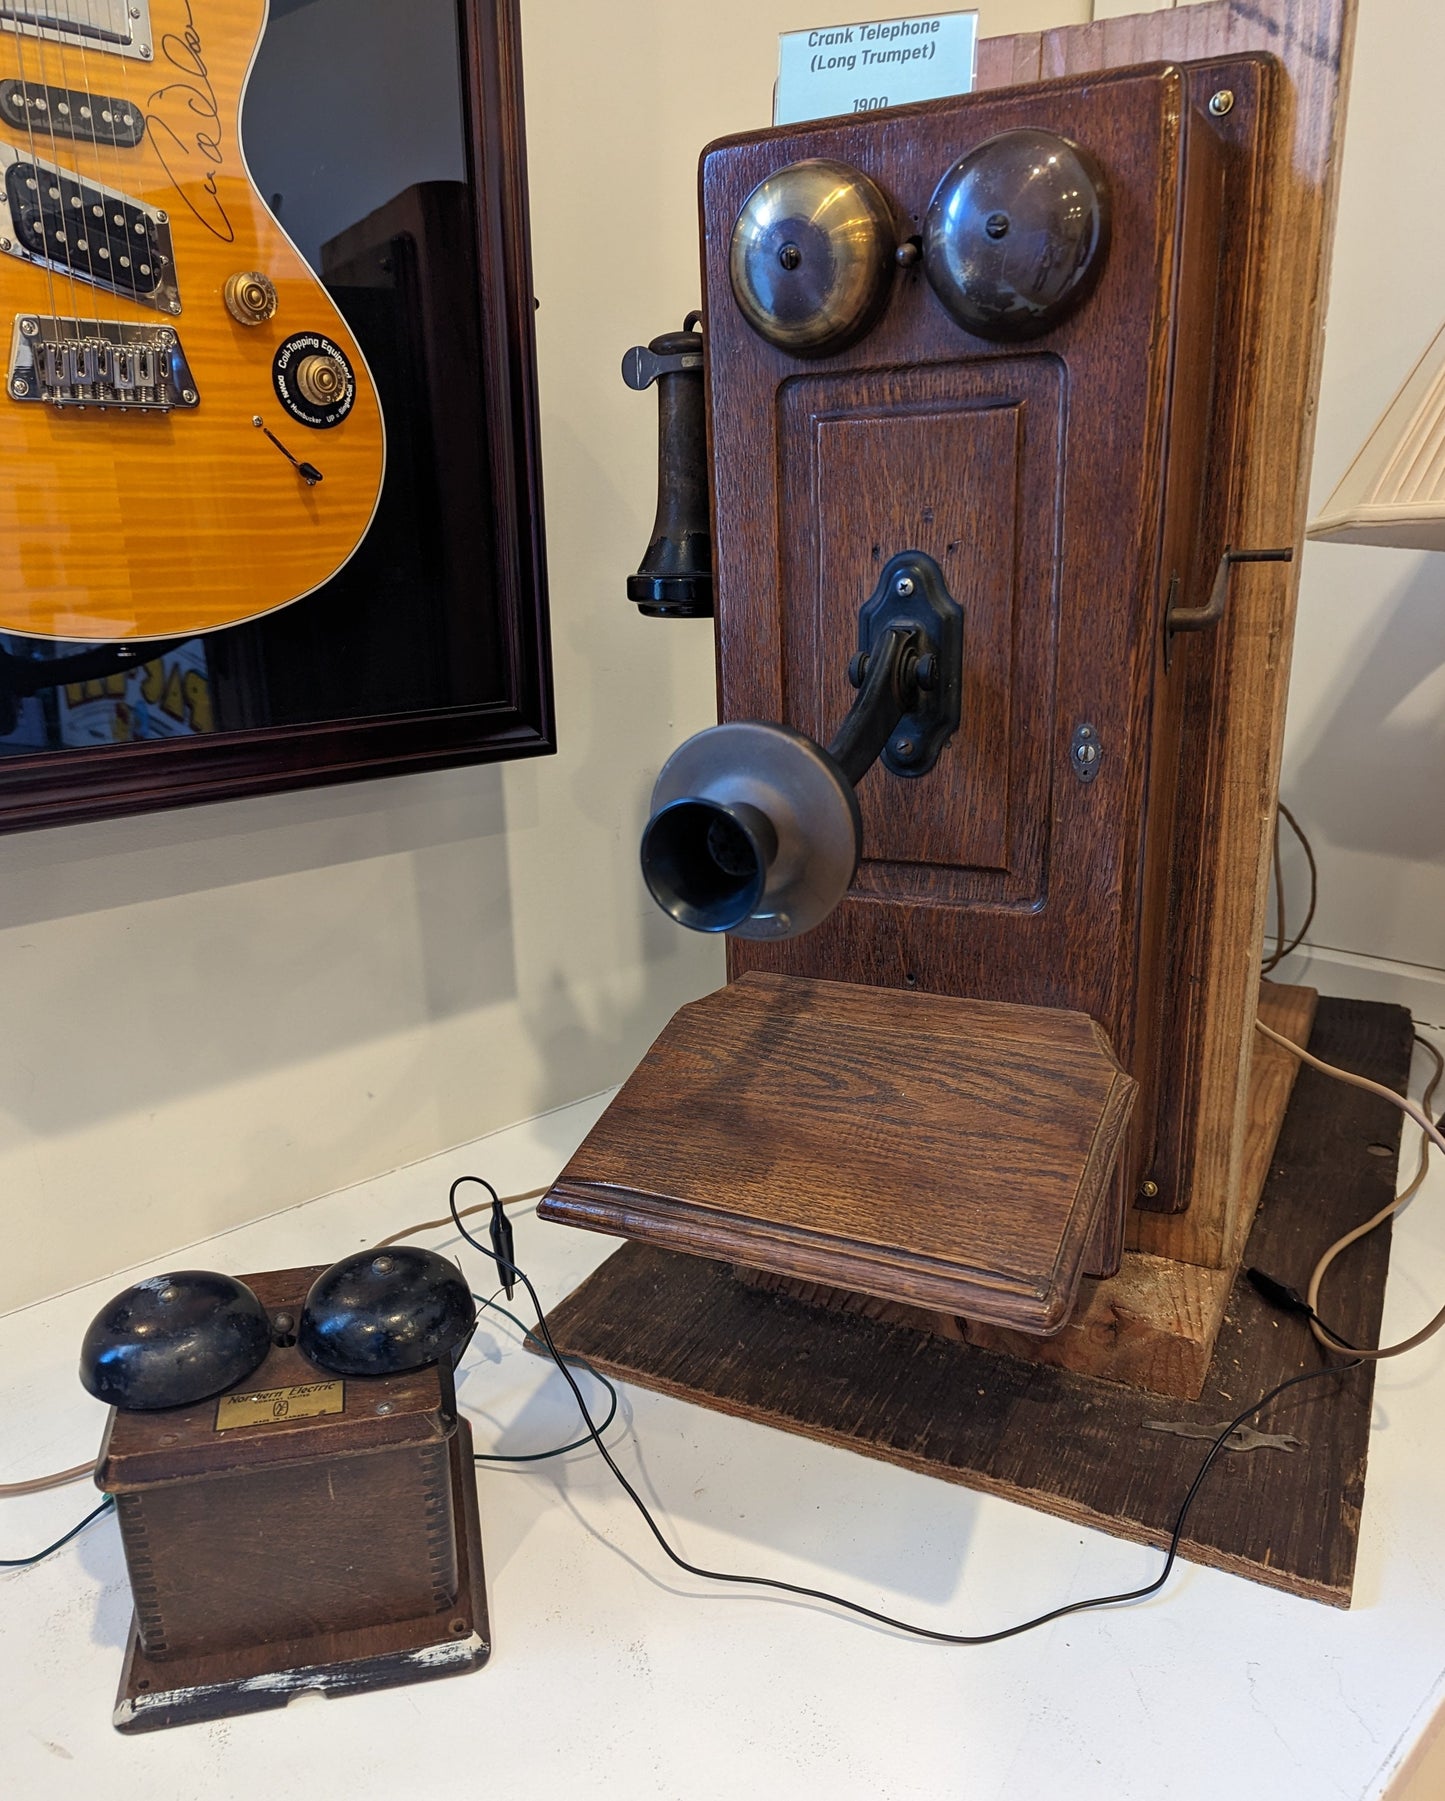 Crank Telephones (1900-1913)